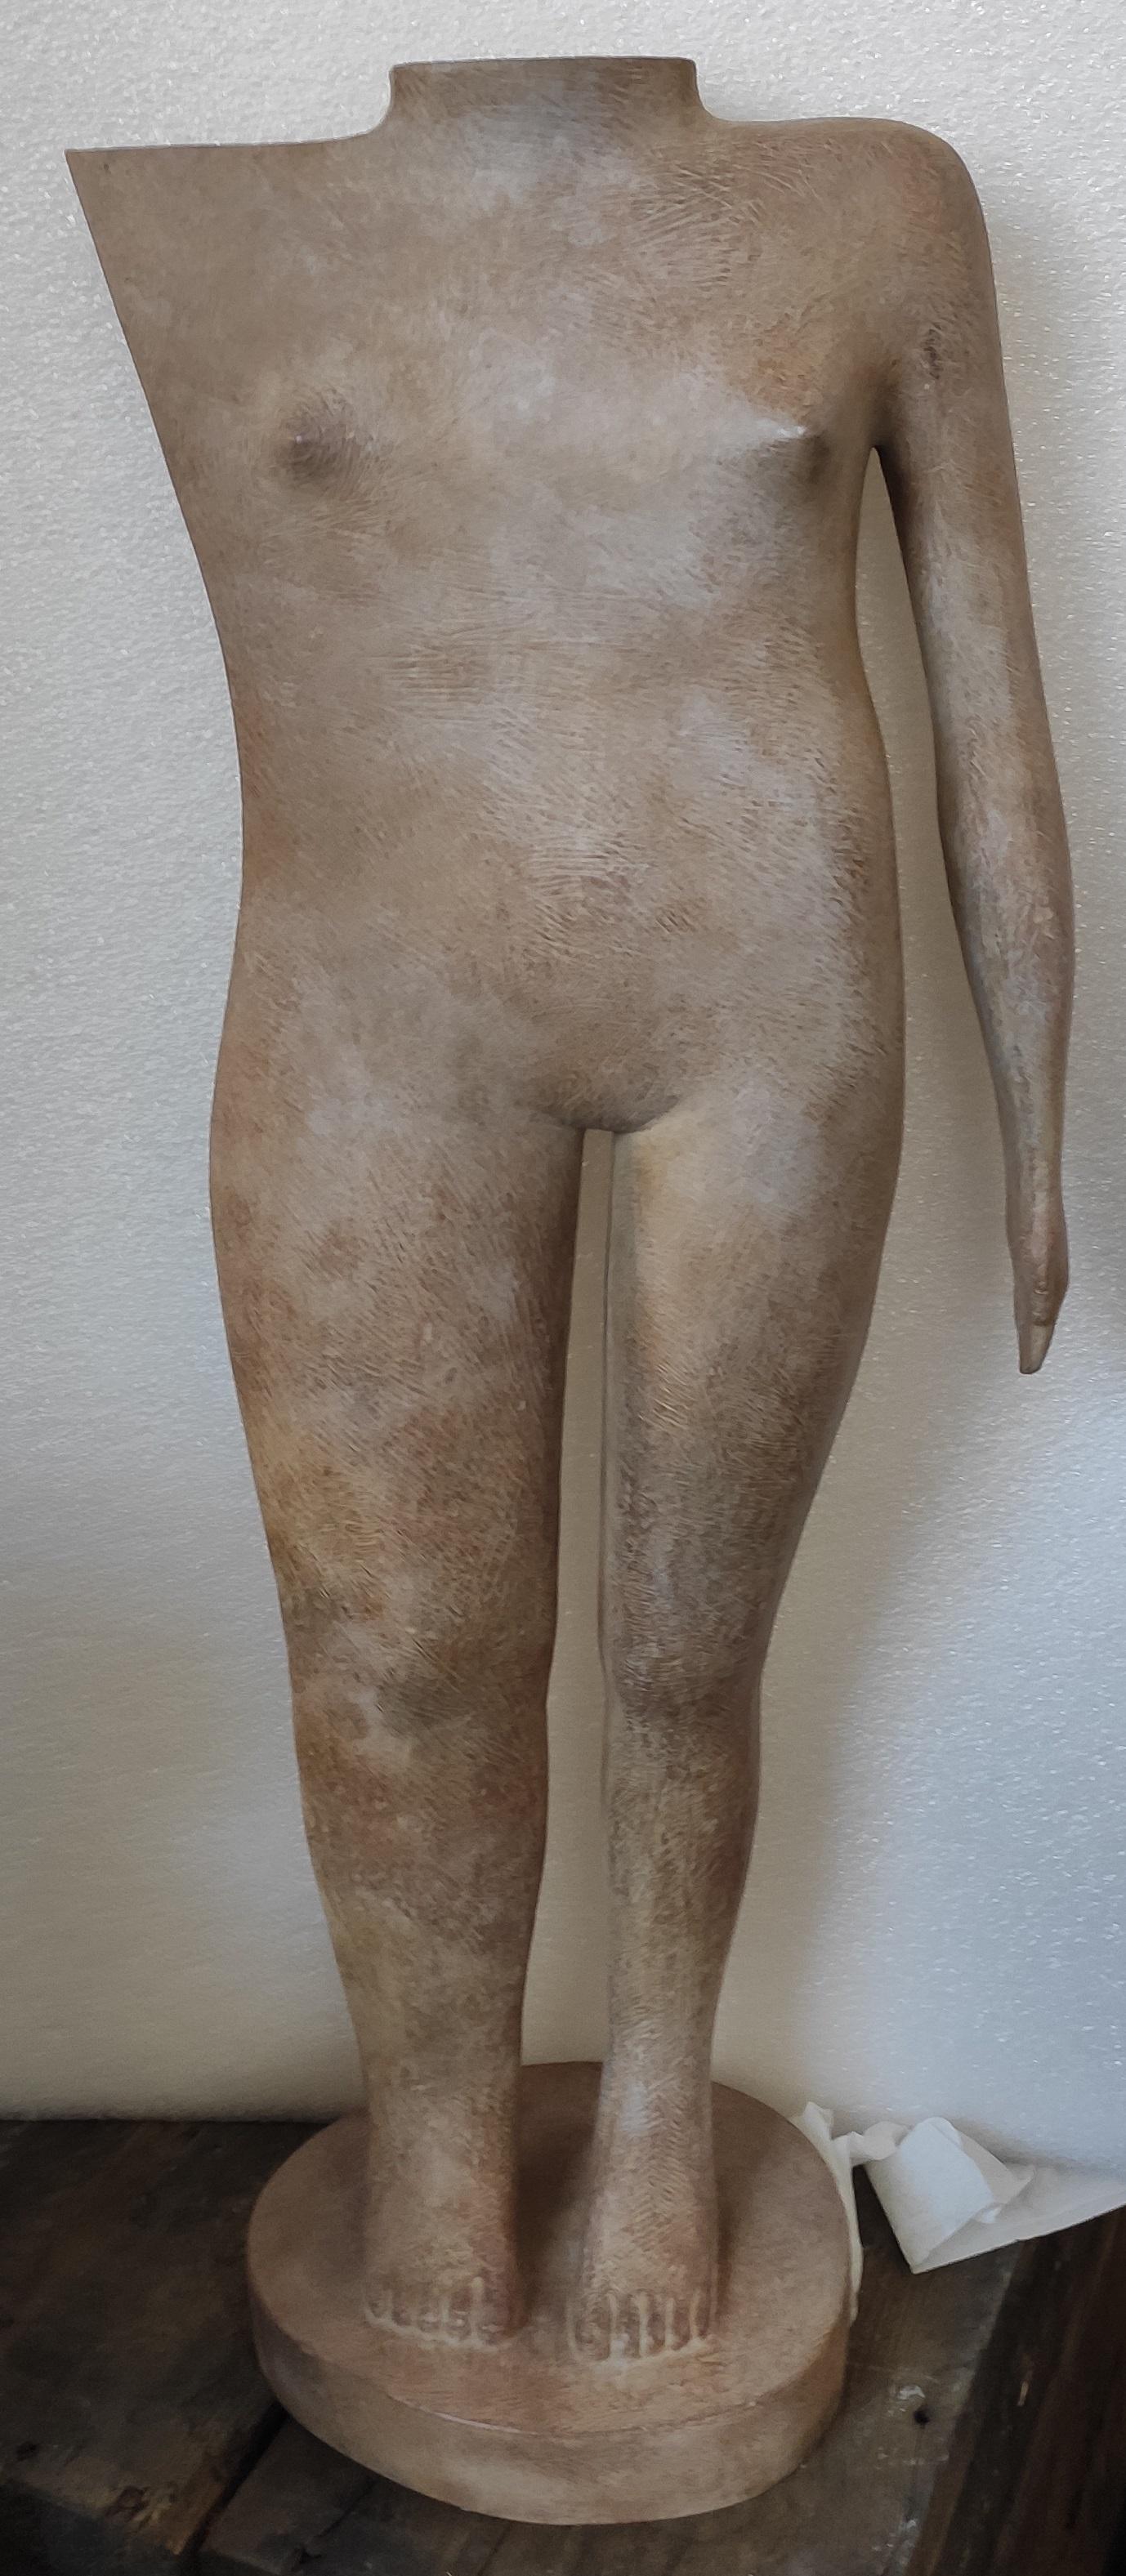 Puberta Stehende Figur Bronzeskulptur Nackter Körper  – Sculpture von KOBE